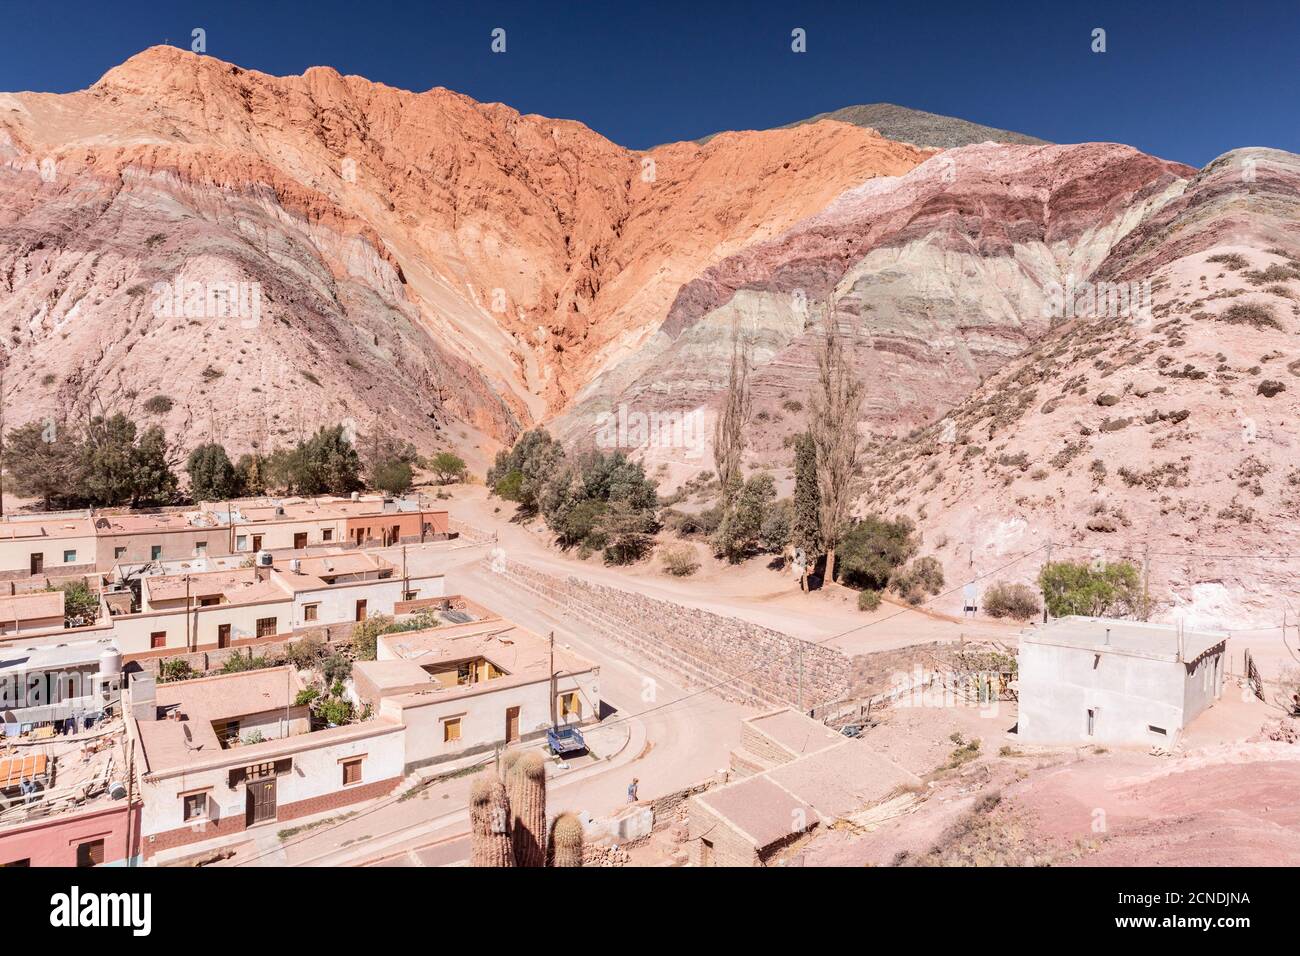 El pueblo de Purmamarca, en la base de la Colina de los siete colores, provincia de Jujuy, al noroeste de Argentina Foto de stock